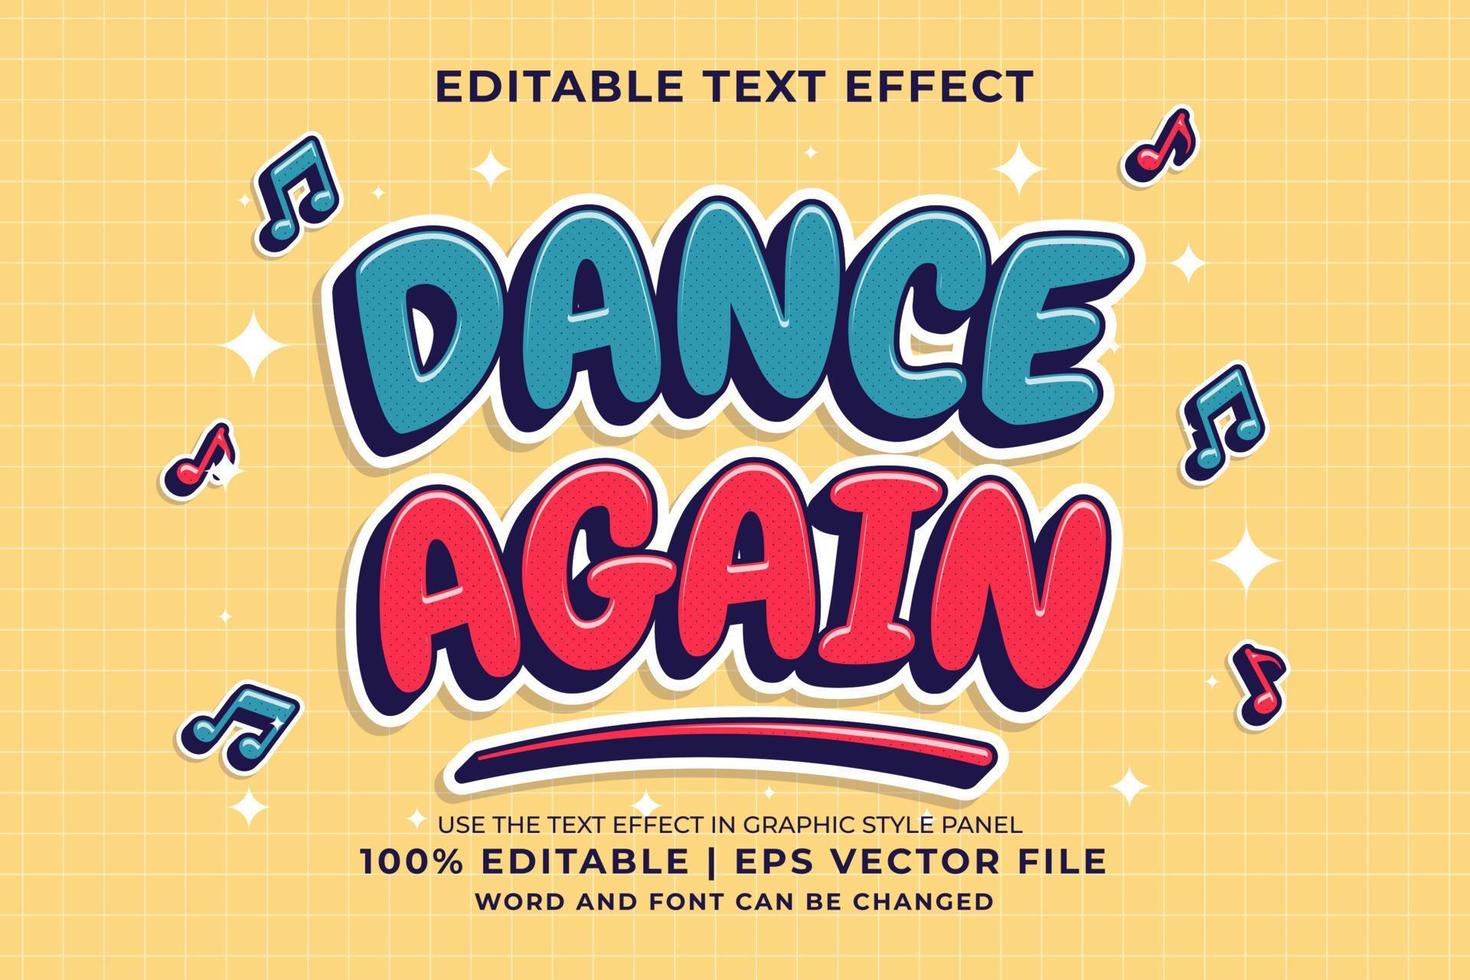 Editable text effect - Dance Again Cartoon template style premium vector